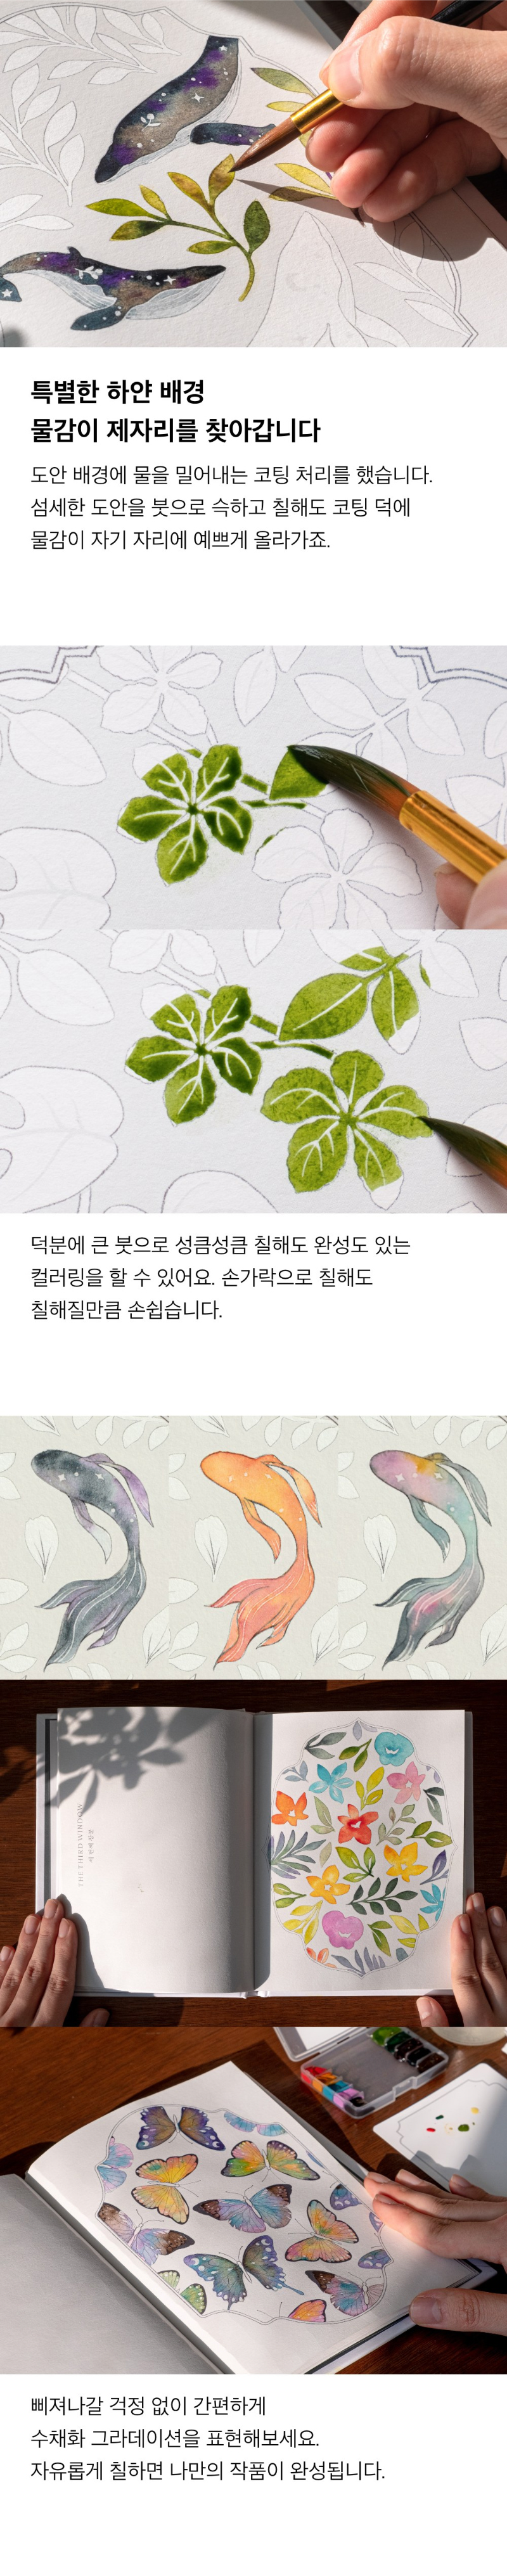 버드인페이지 꽃잎 수채화 하얀 키트 물감 사용 이미지